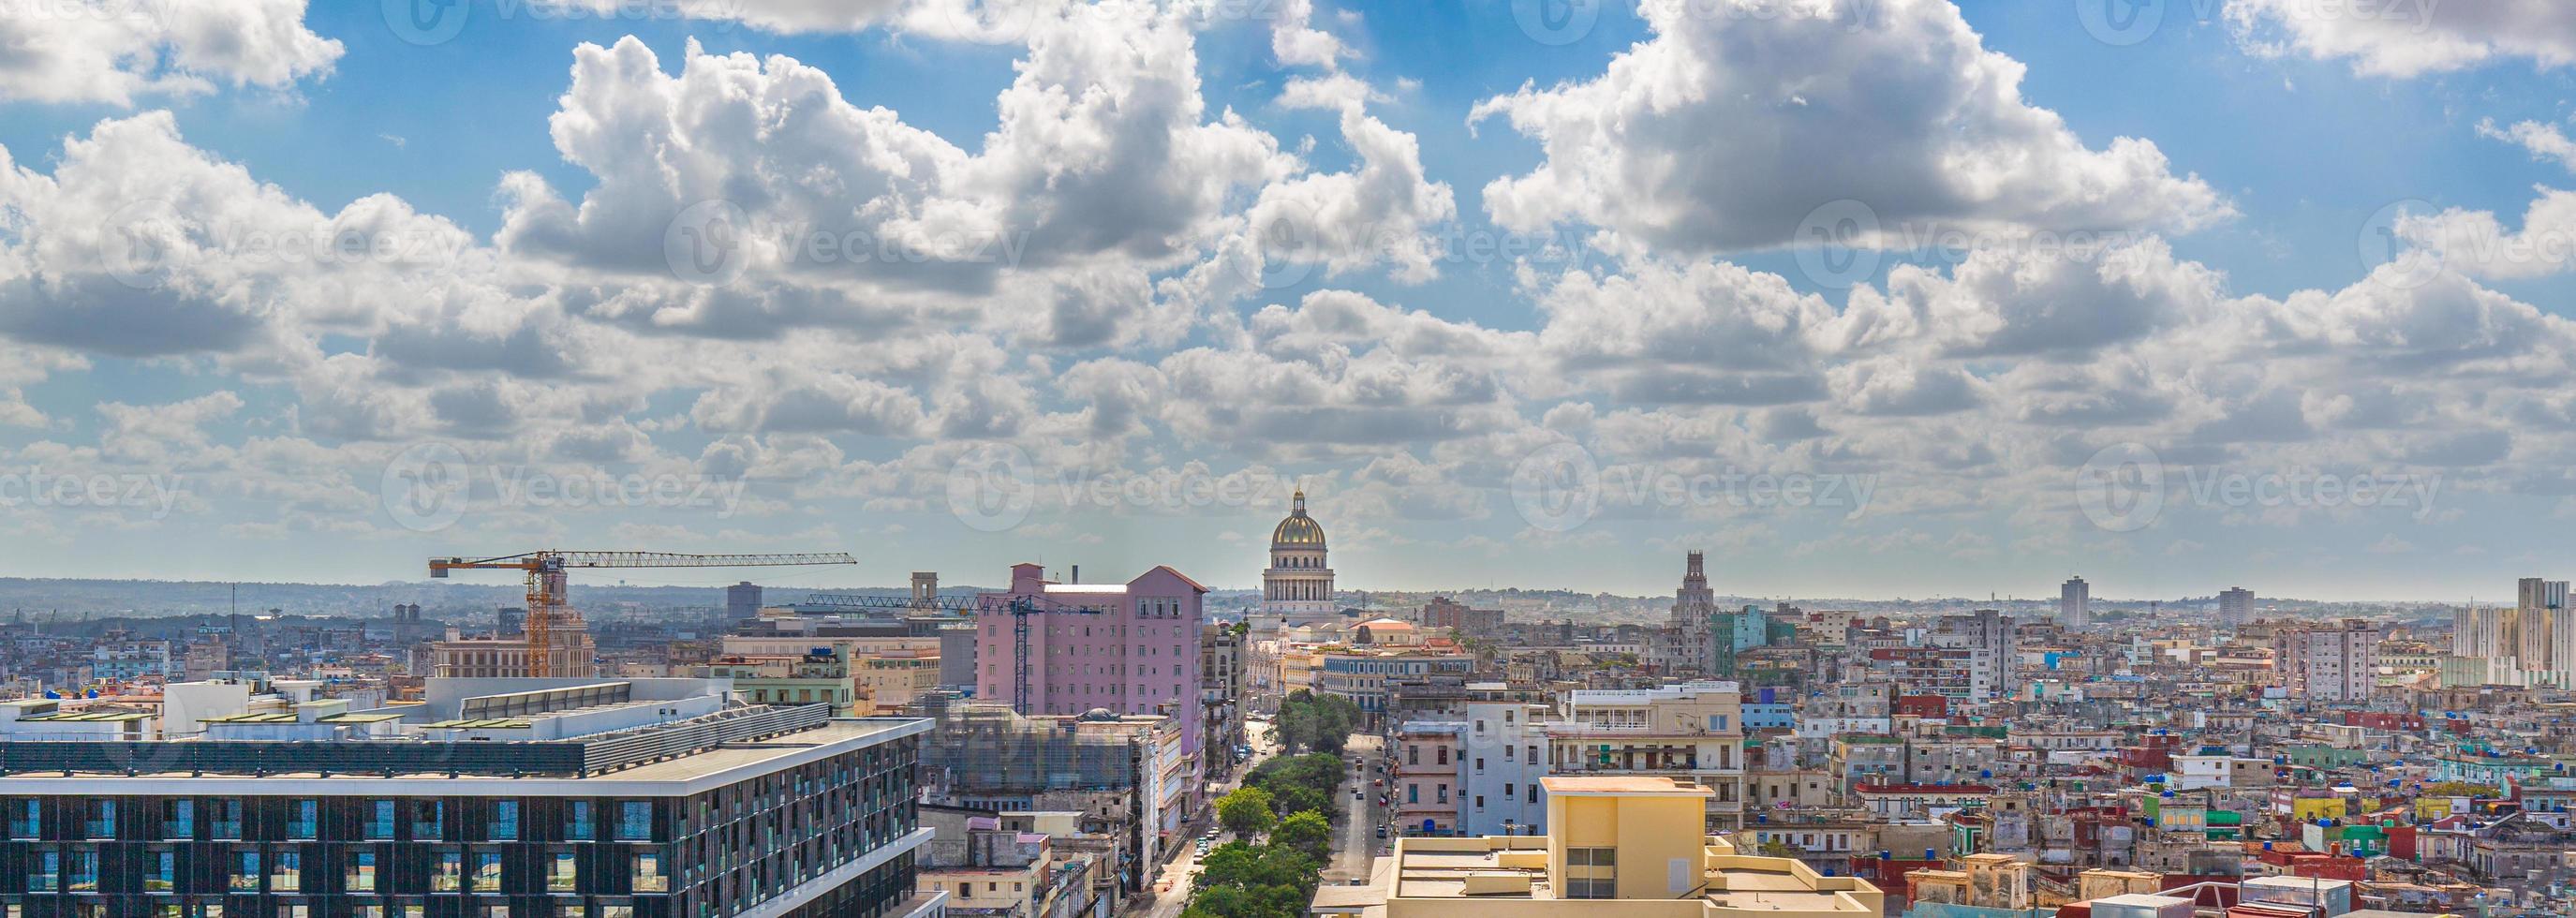 Vista panoramica di un'Avana Vecchia e colorate strade dell'Avana Vecchia nel centro storico della città havana vieja vicino a paseo el prado e capitolio foto